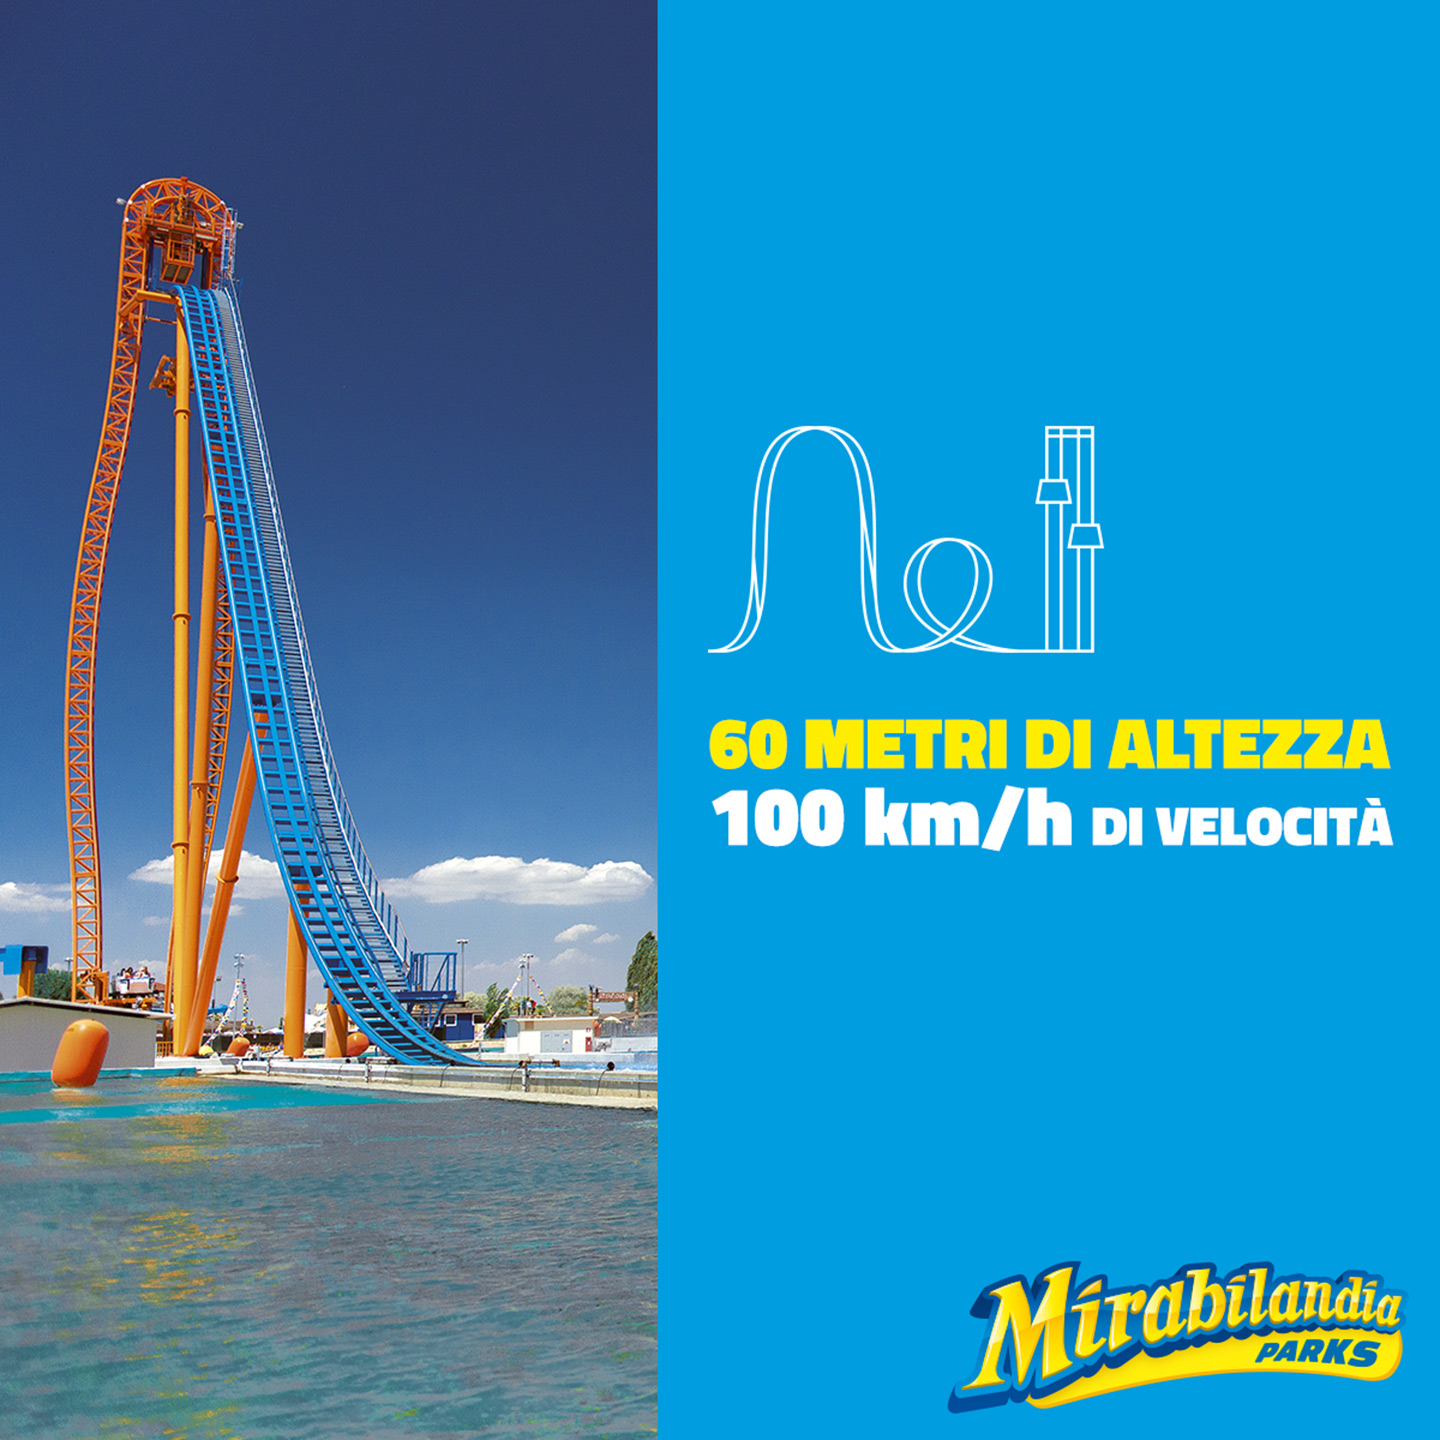 Locandina di Mirabilandia raffigurante nella metà di sinistra una giostra e a destra una scritta bianca e gialla con sfondo azzurro: "60 metri di altezza, 100 km/h di velocità".